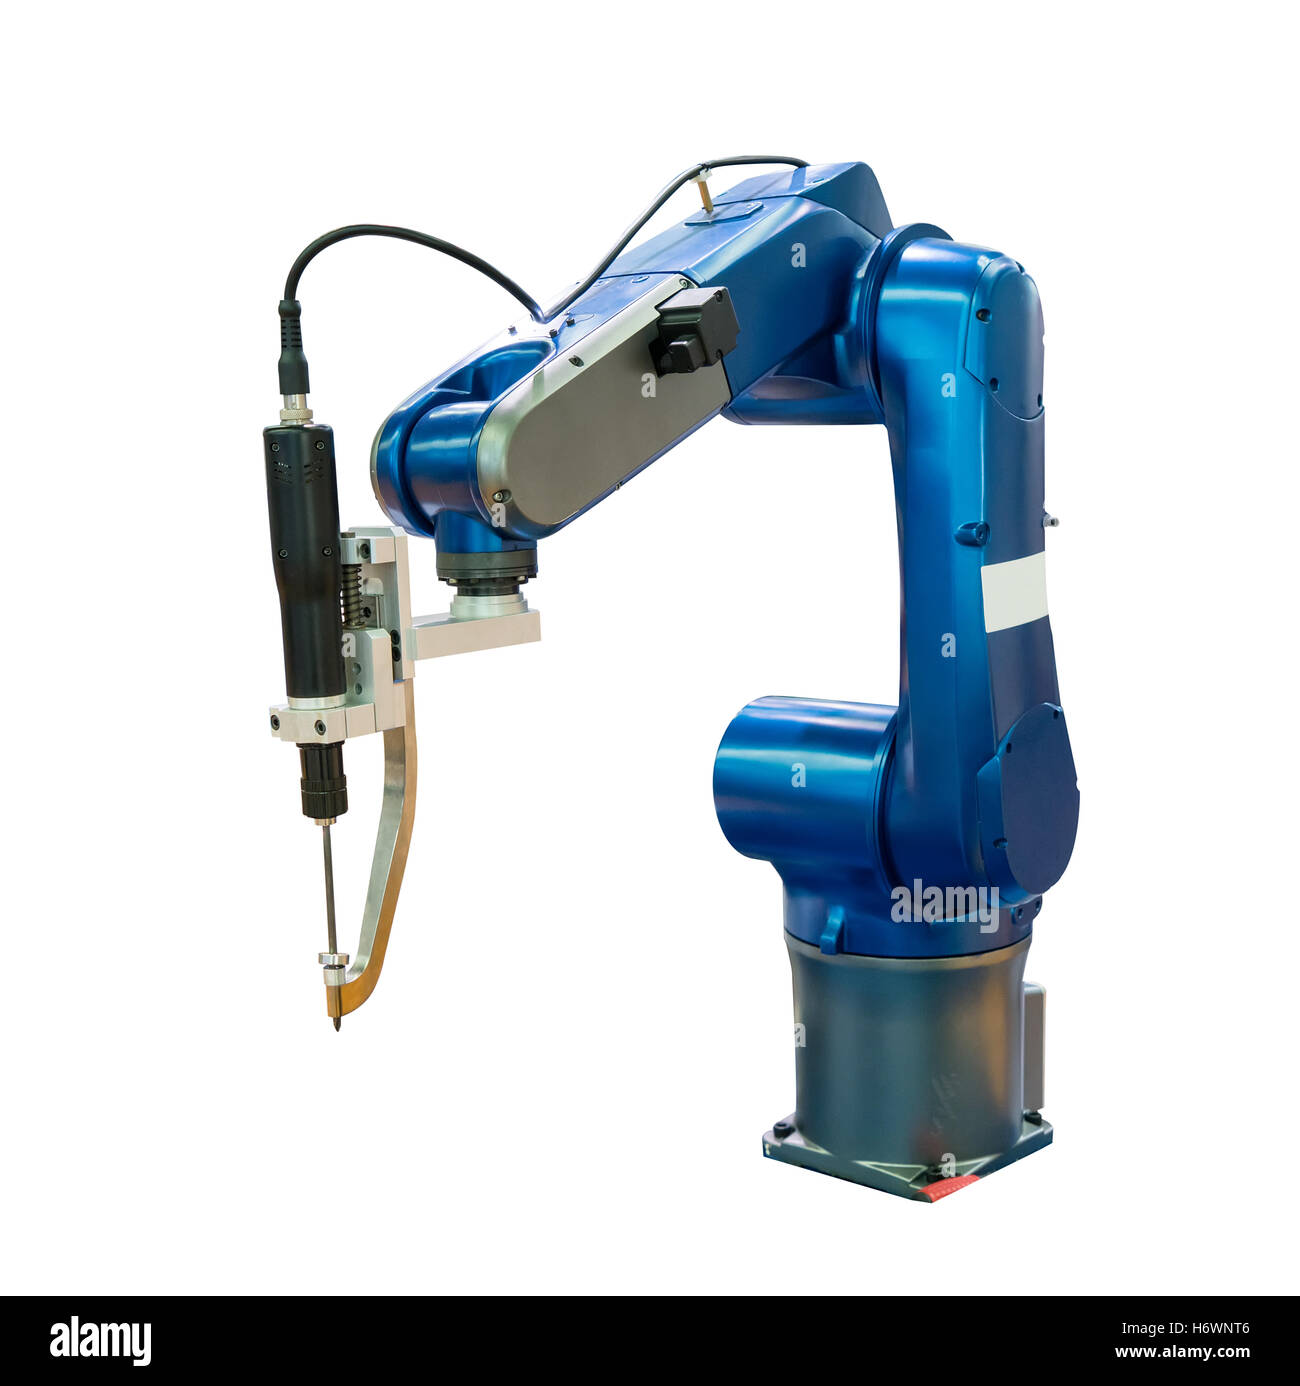 Roboterarm an Produktionslinie im Werk Stockfoto